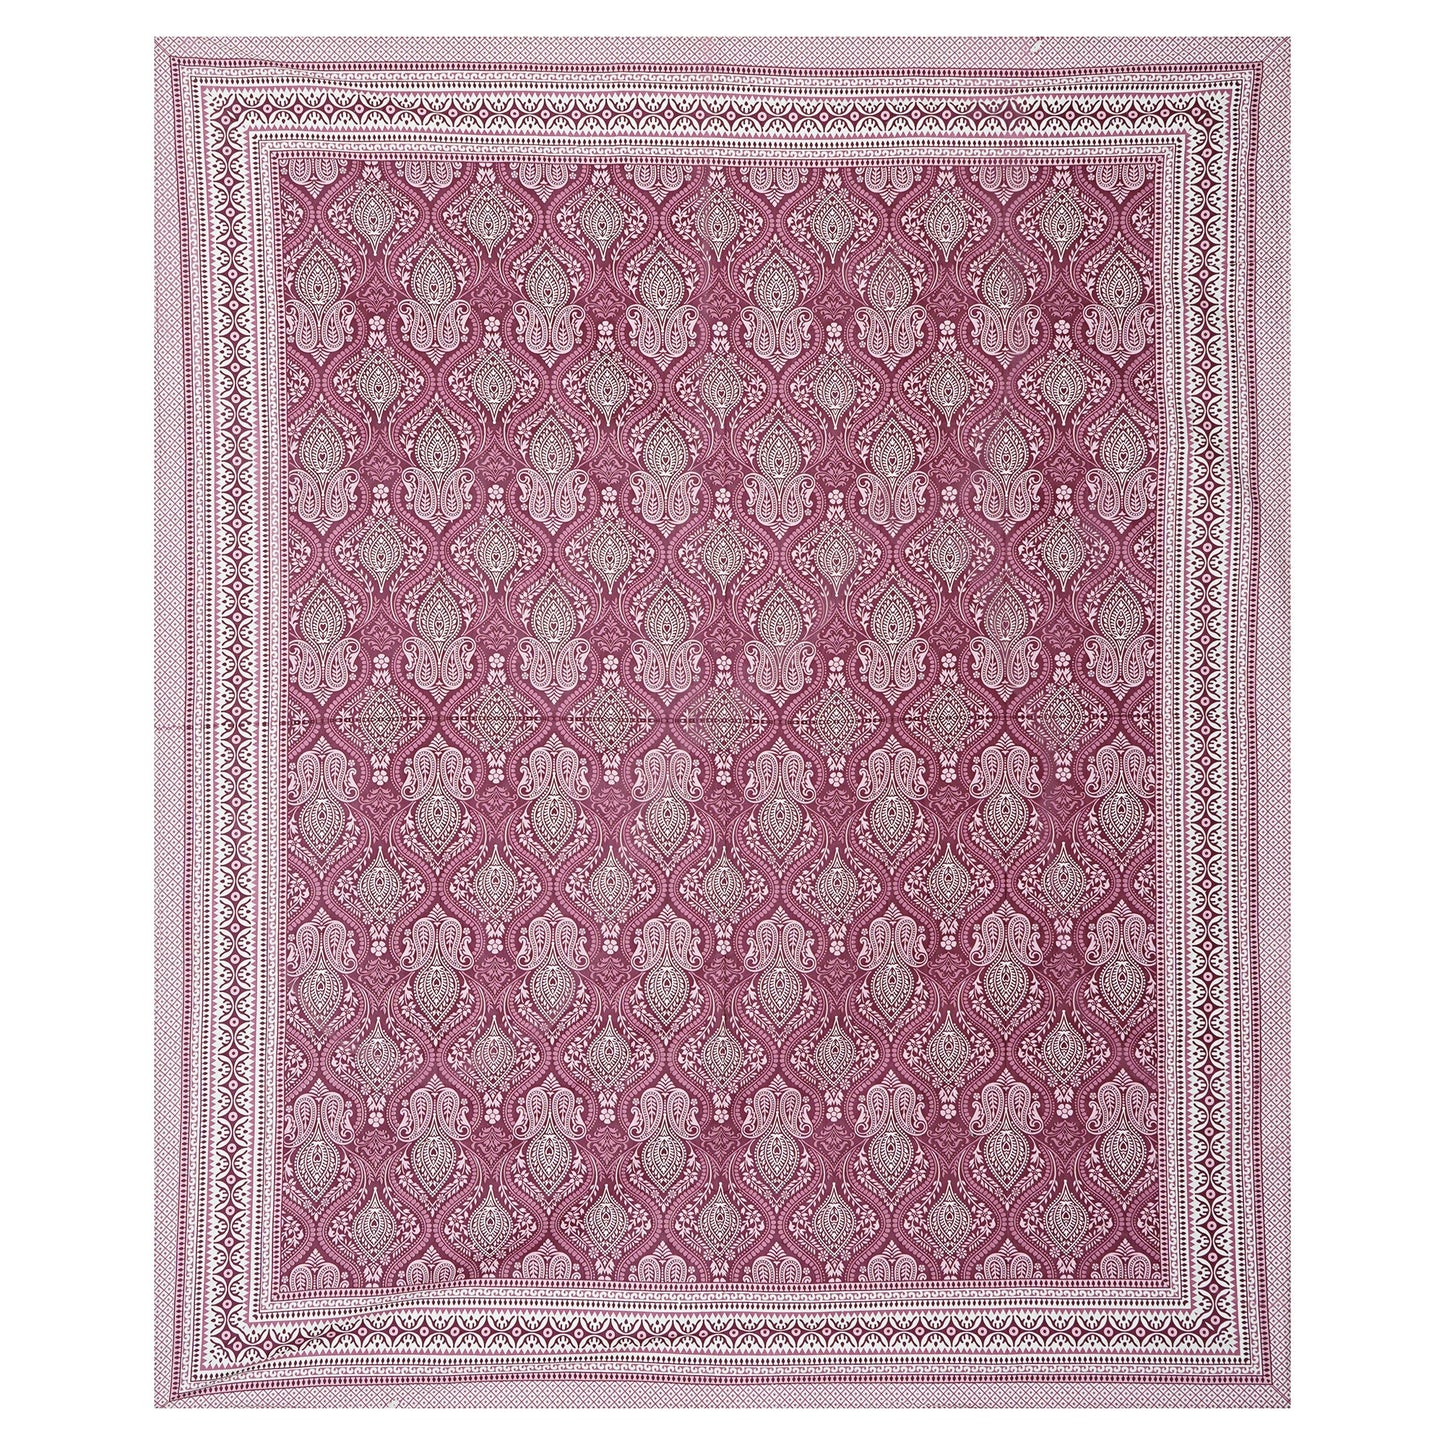 Pine Pink - Handblock Printed Bedsheet